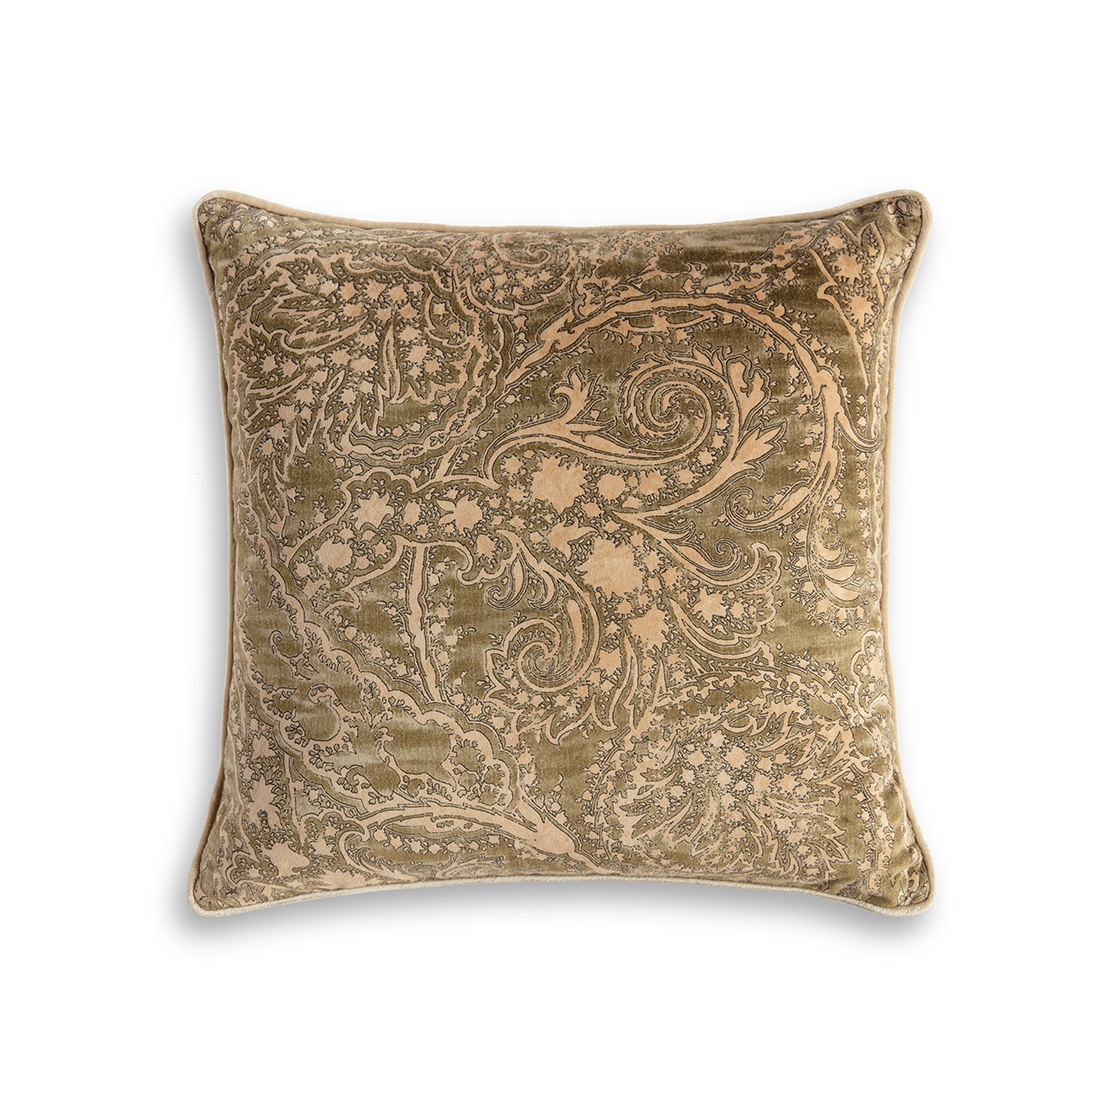 Balthazar cushion - Laurel backed in Como silk velvet - Fern with Capri silk velvet - Stone piping - Beaumont & Fletcher